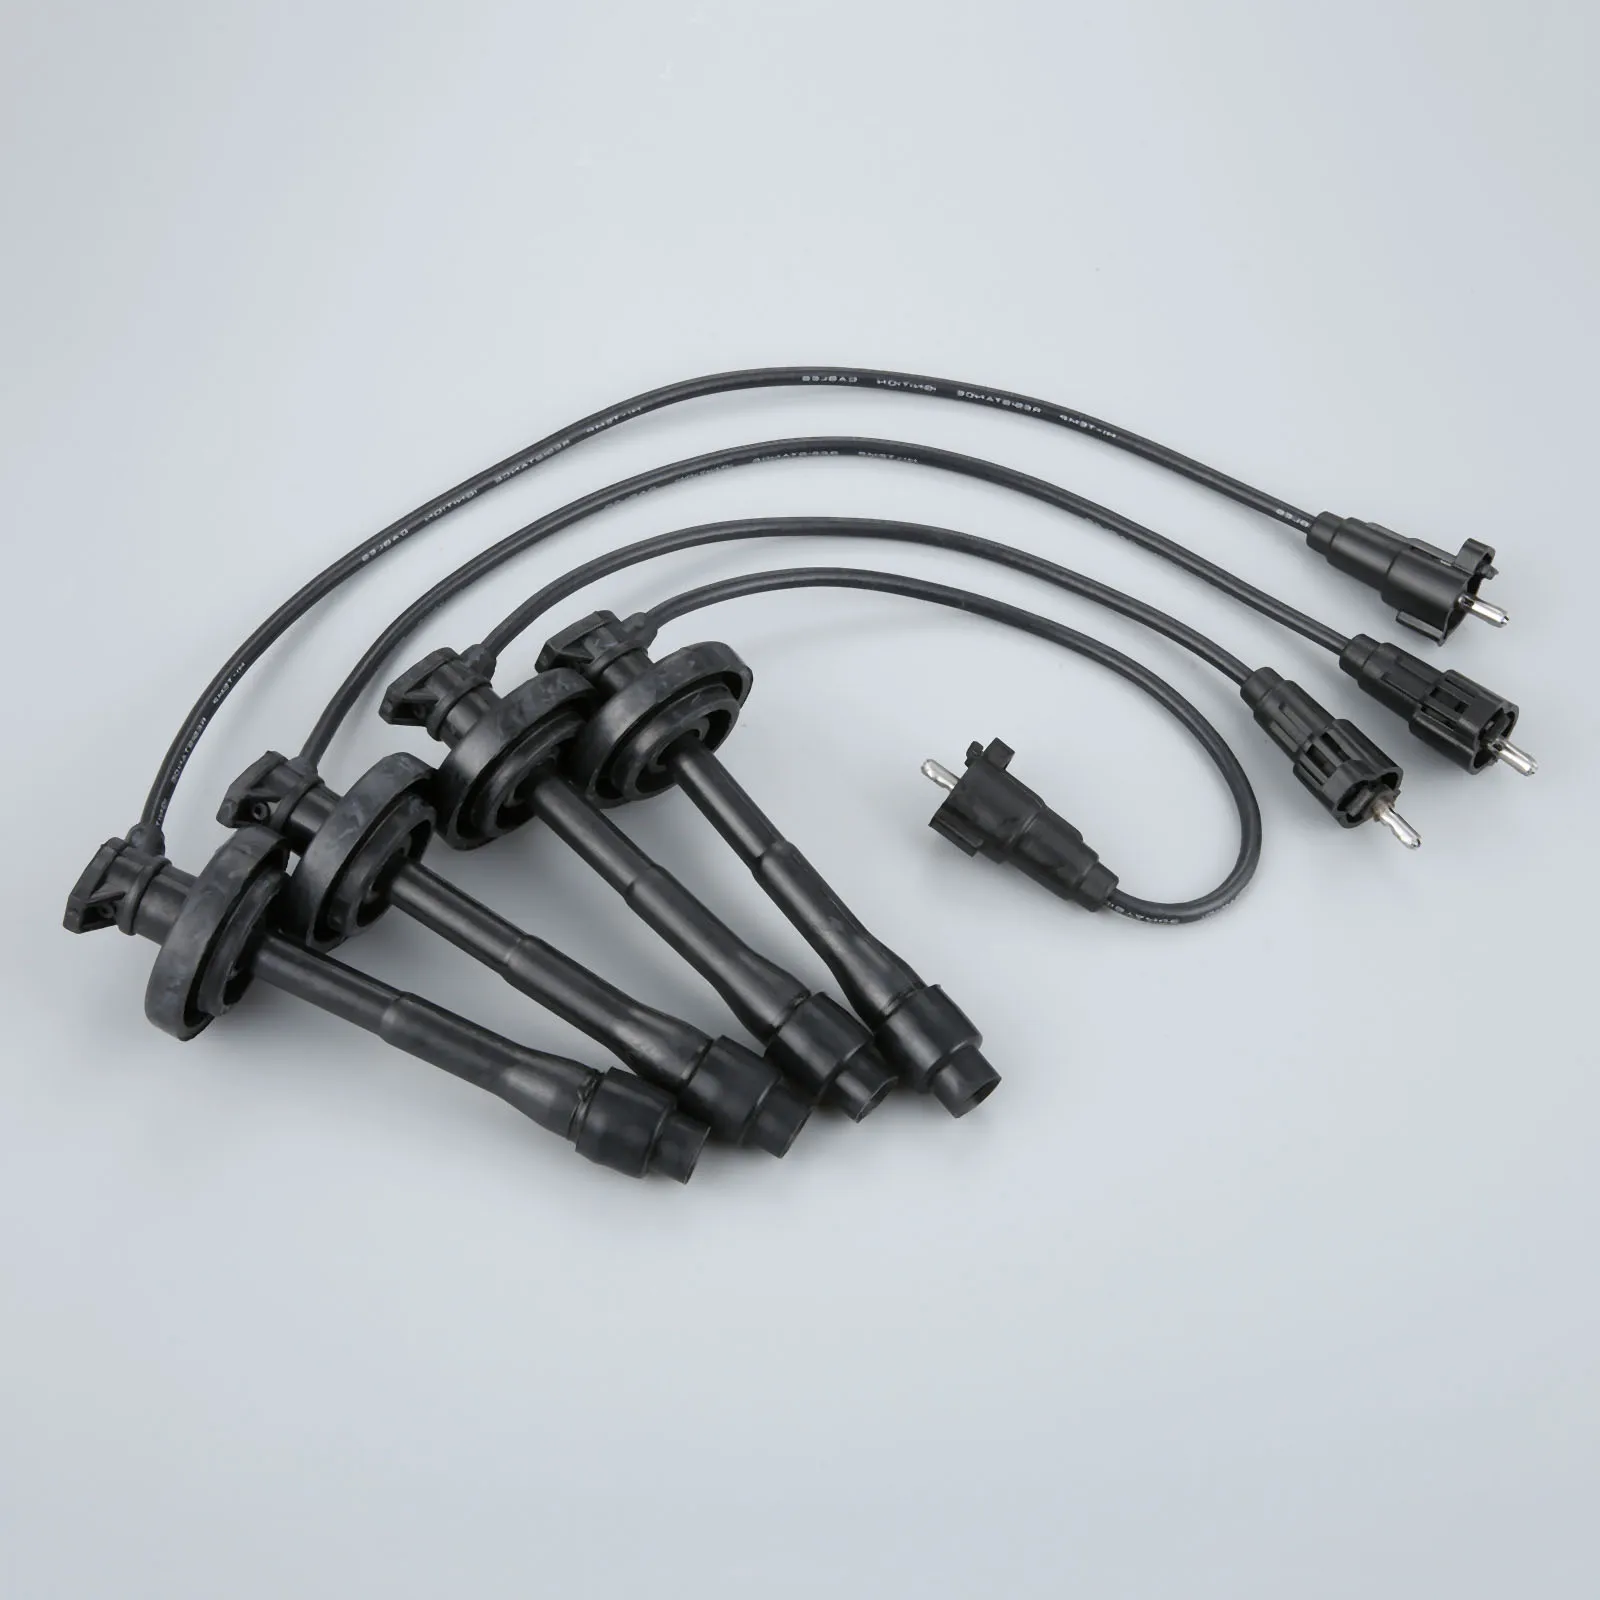 4 шт./лот зажигания провода провод к свече зажигания кабель 5 мм для Защитные чехлы для сидений, сшитые специально для Toyota Corolla Chevrolet Prizm 671-4169 7899 TE64 09419